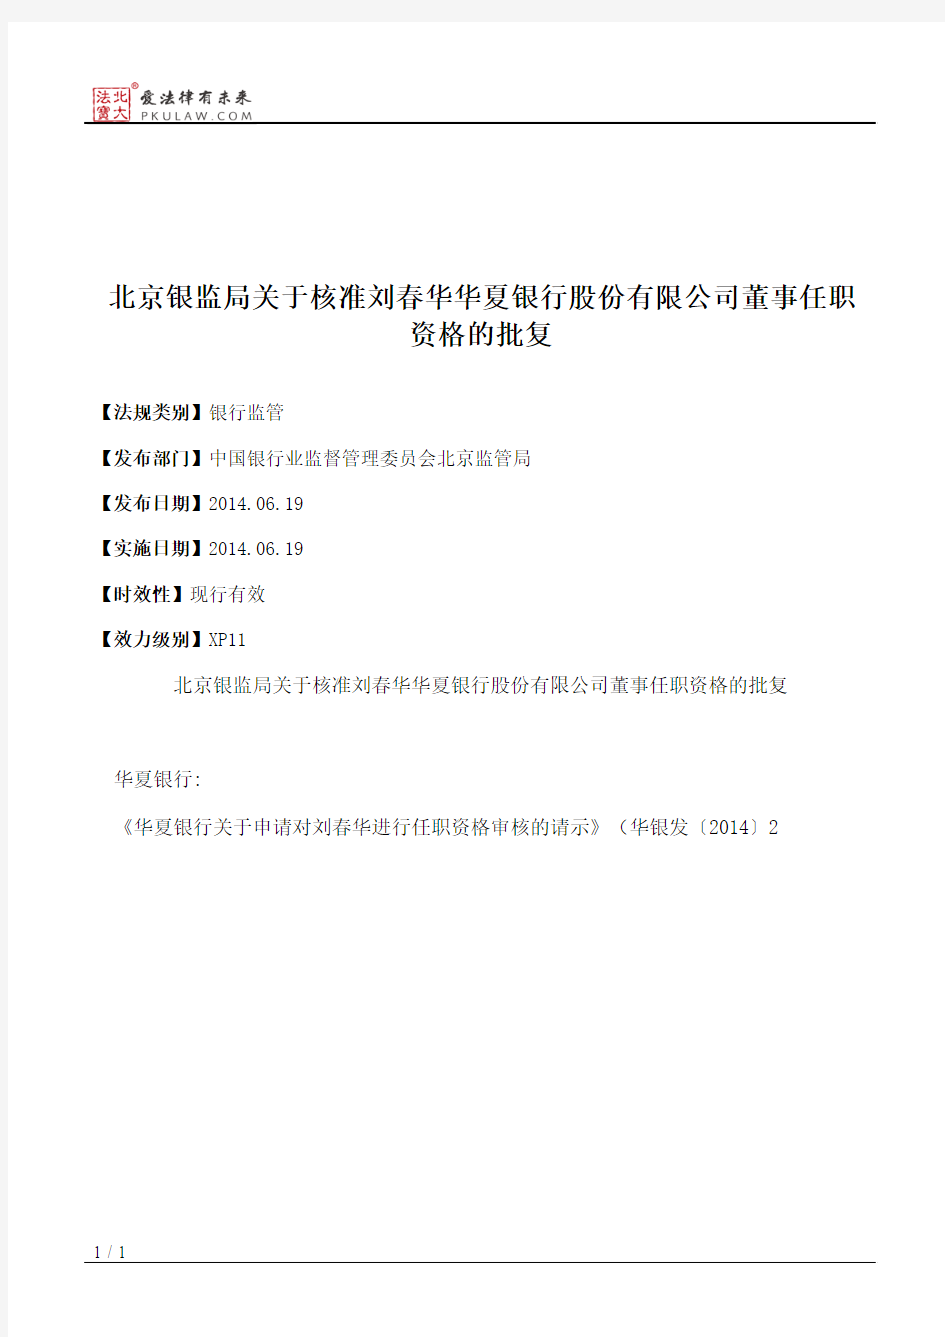 北京银监局关于核准刘春华华夏银行股份有限公司董事任职资格的批复